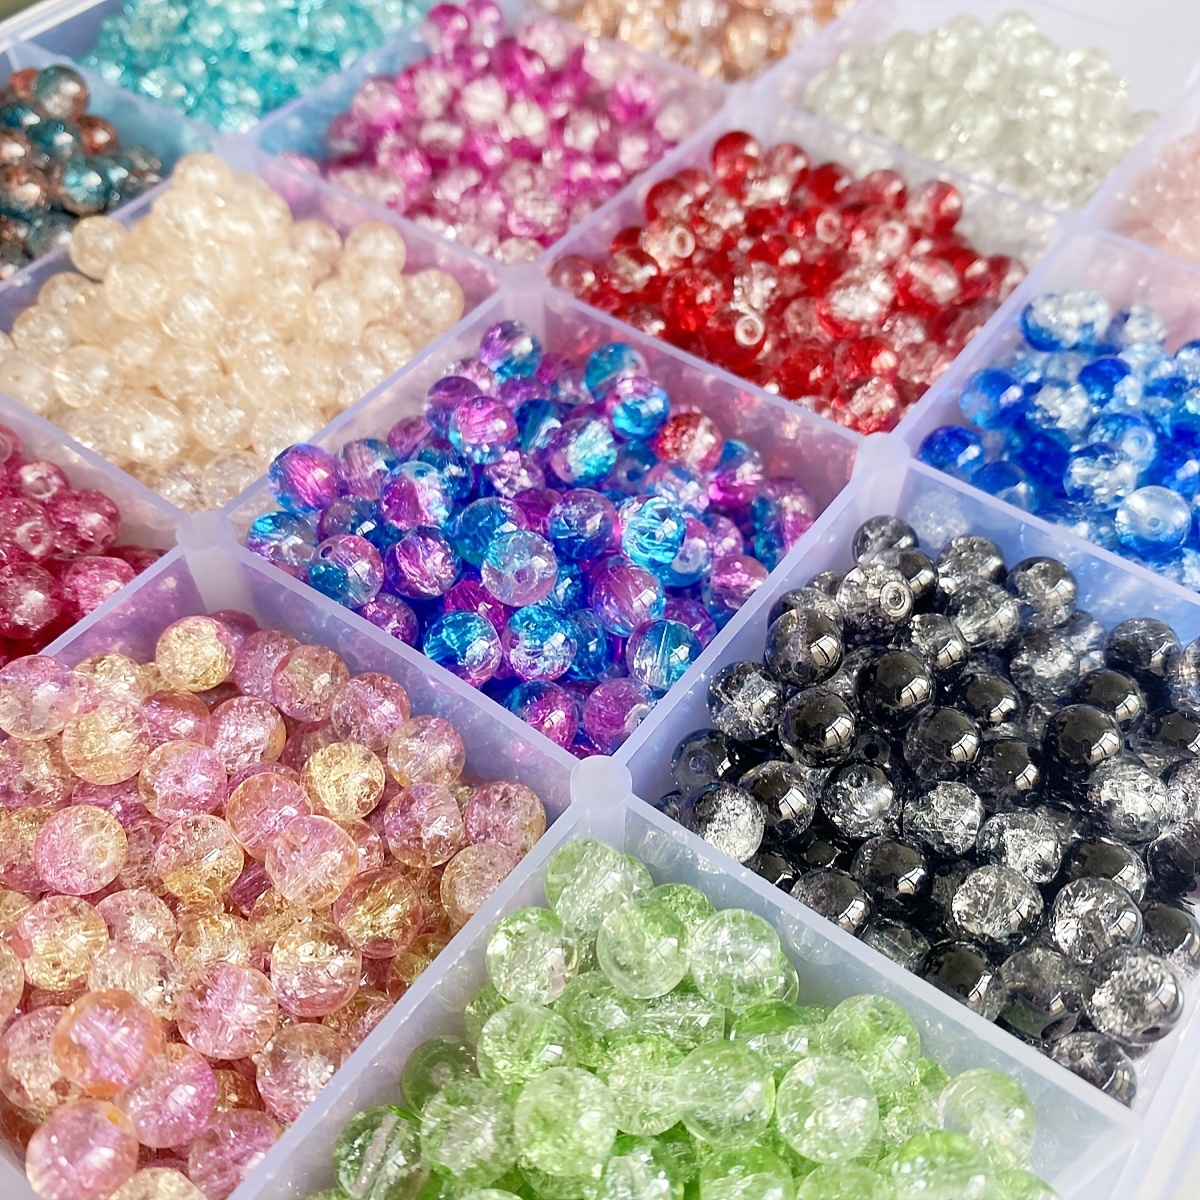 8mm Multicoloured Crystal Clear Beads Rainbow Diamond Jewellery DIY Sparkly